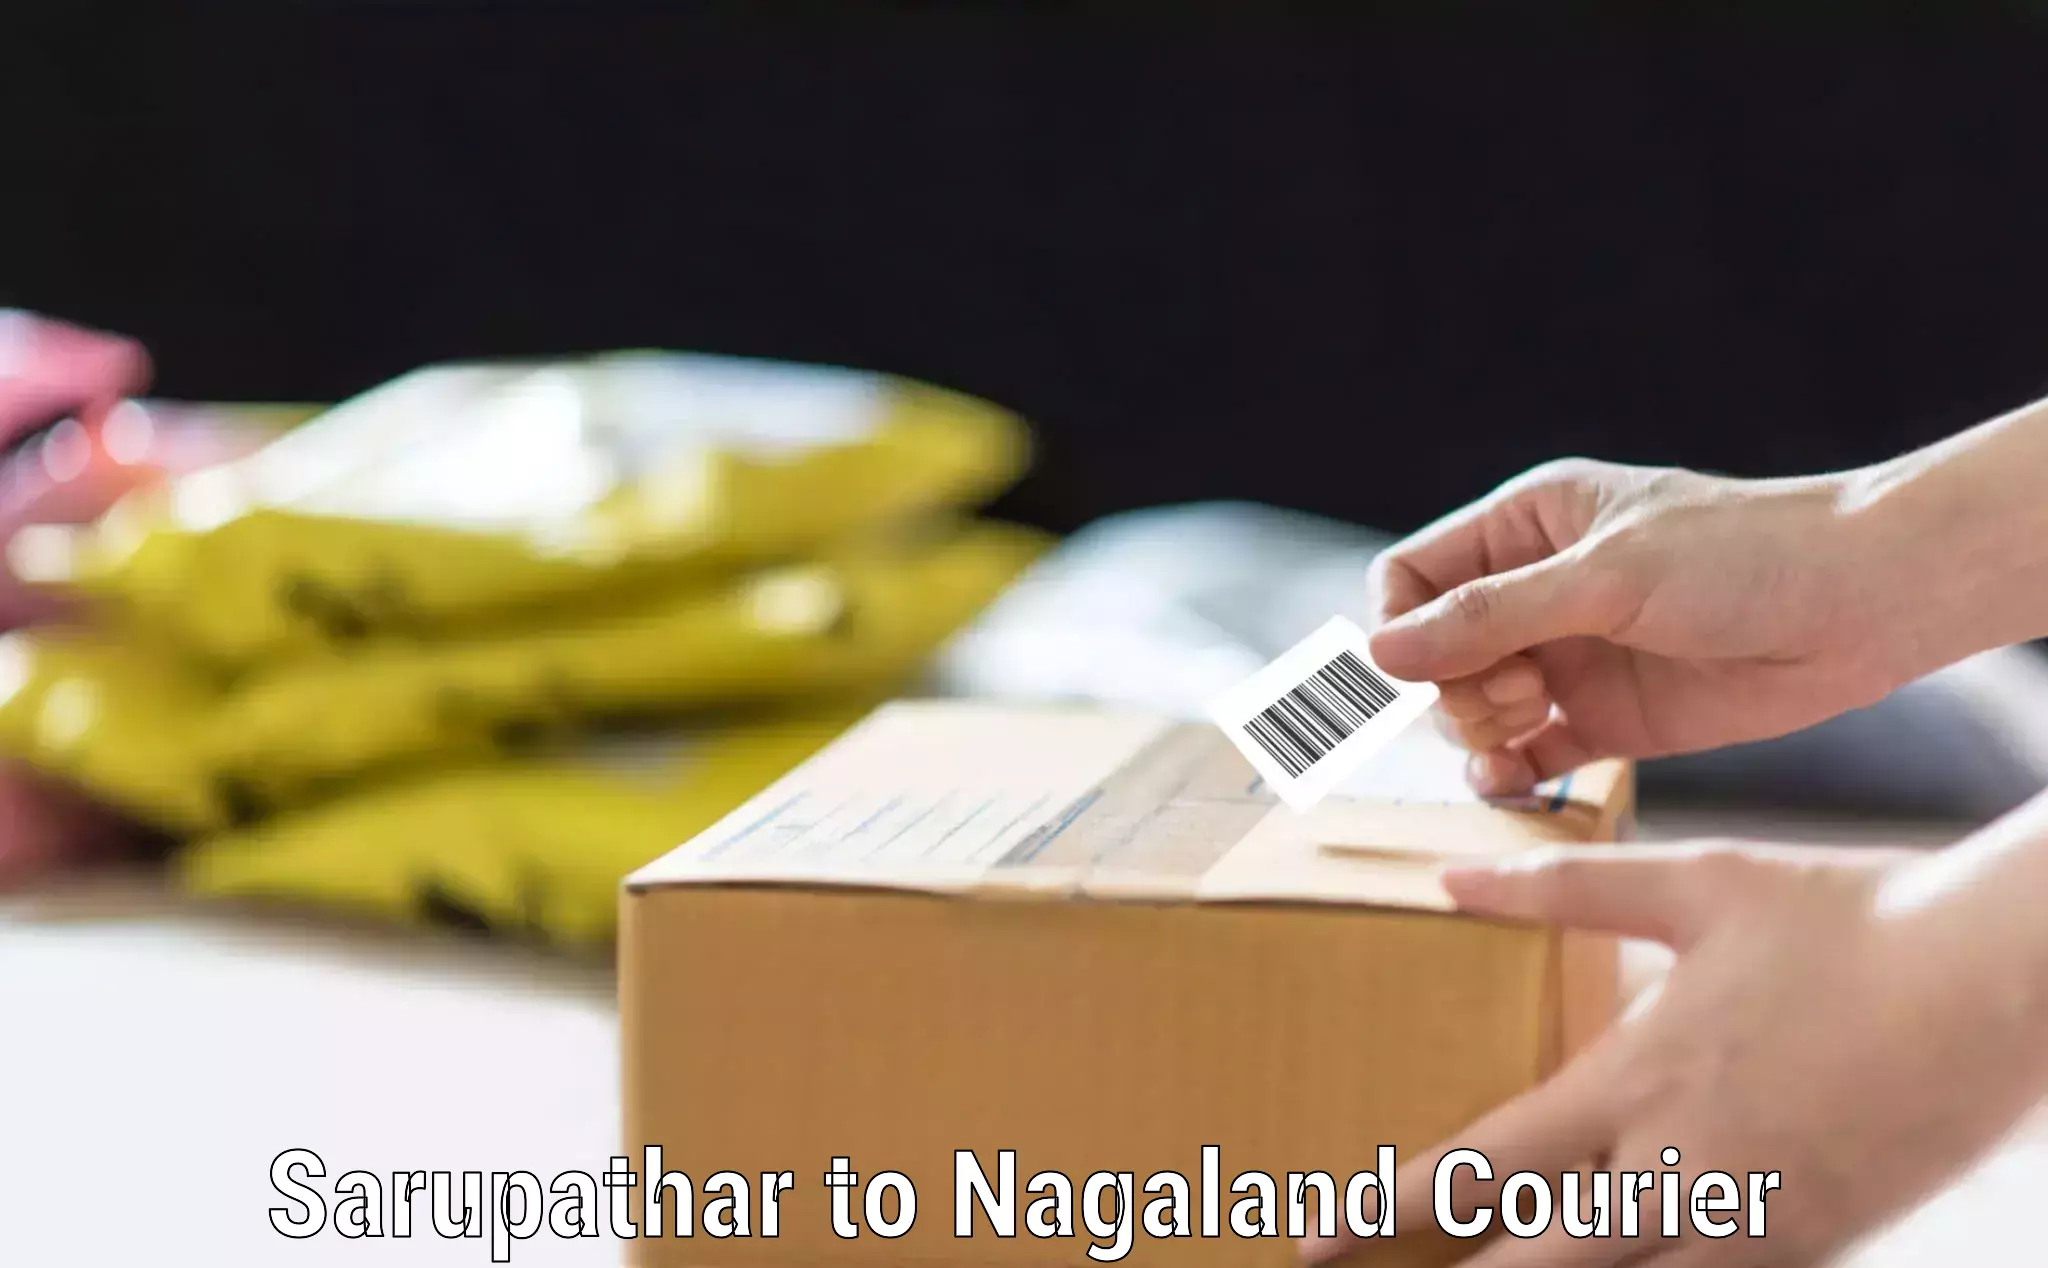 Baggage relocation service Sarupathar to Nagaland